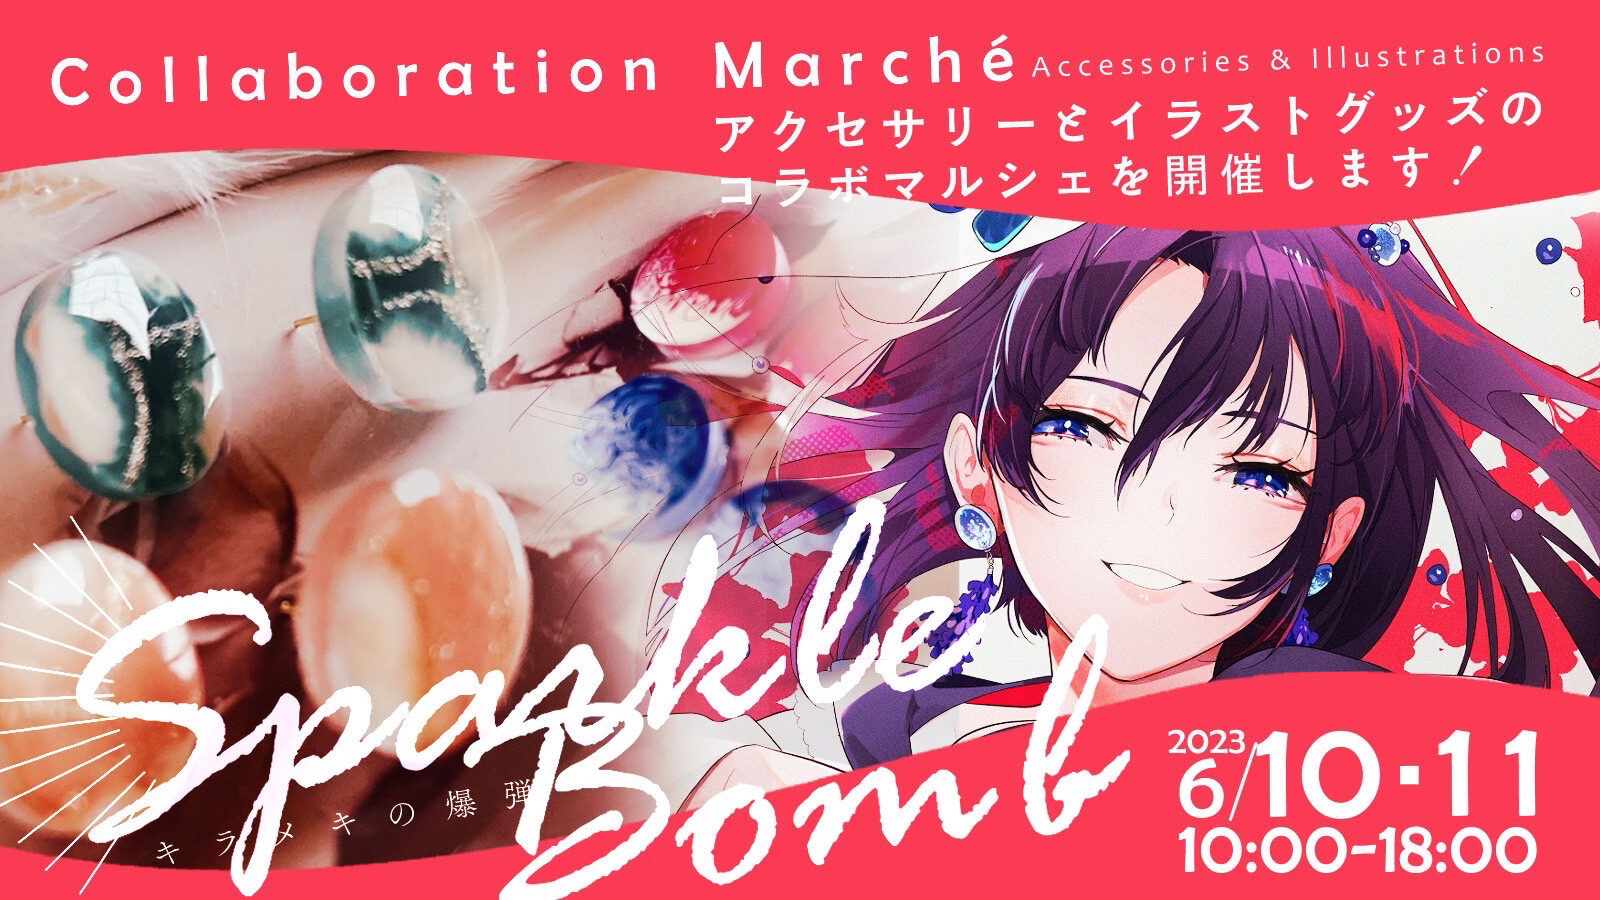 【collaboration marché】“Sparkle bomb”